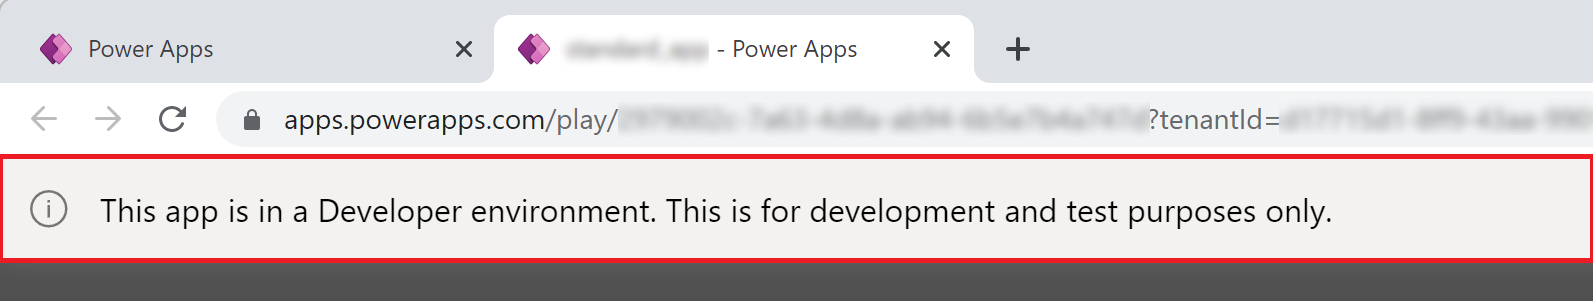 Bannière de l’application dans l’environnement de développeur Power Apps.